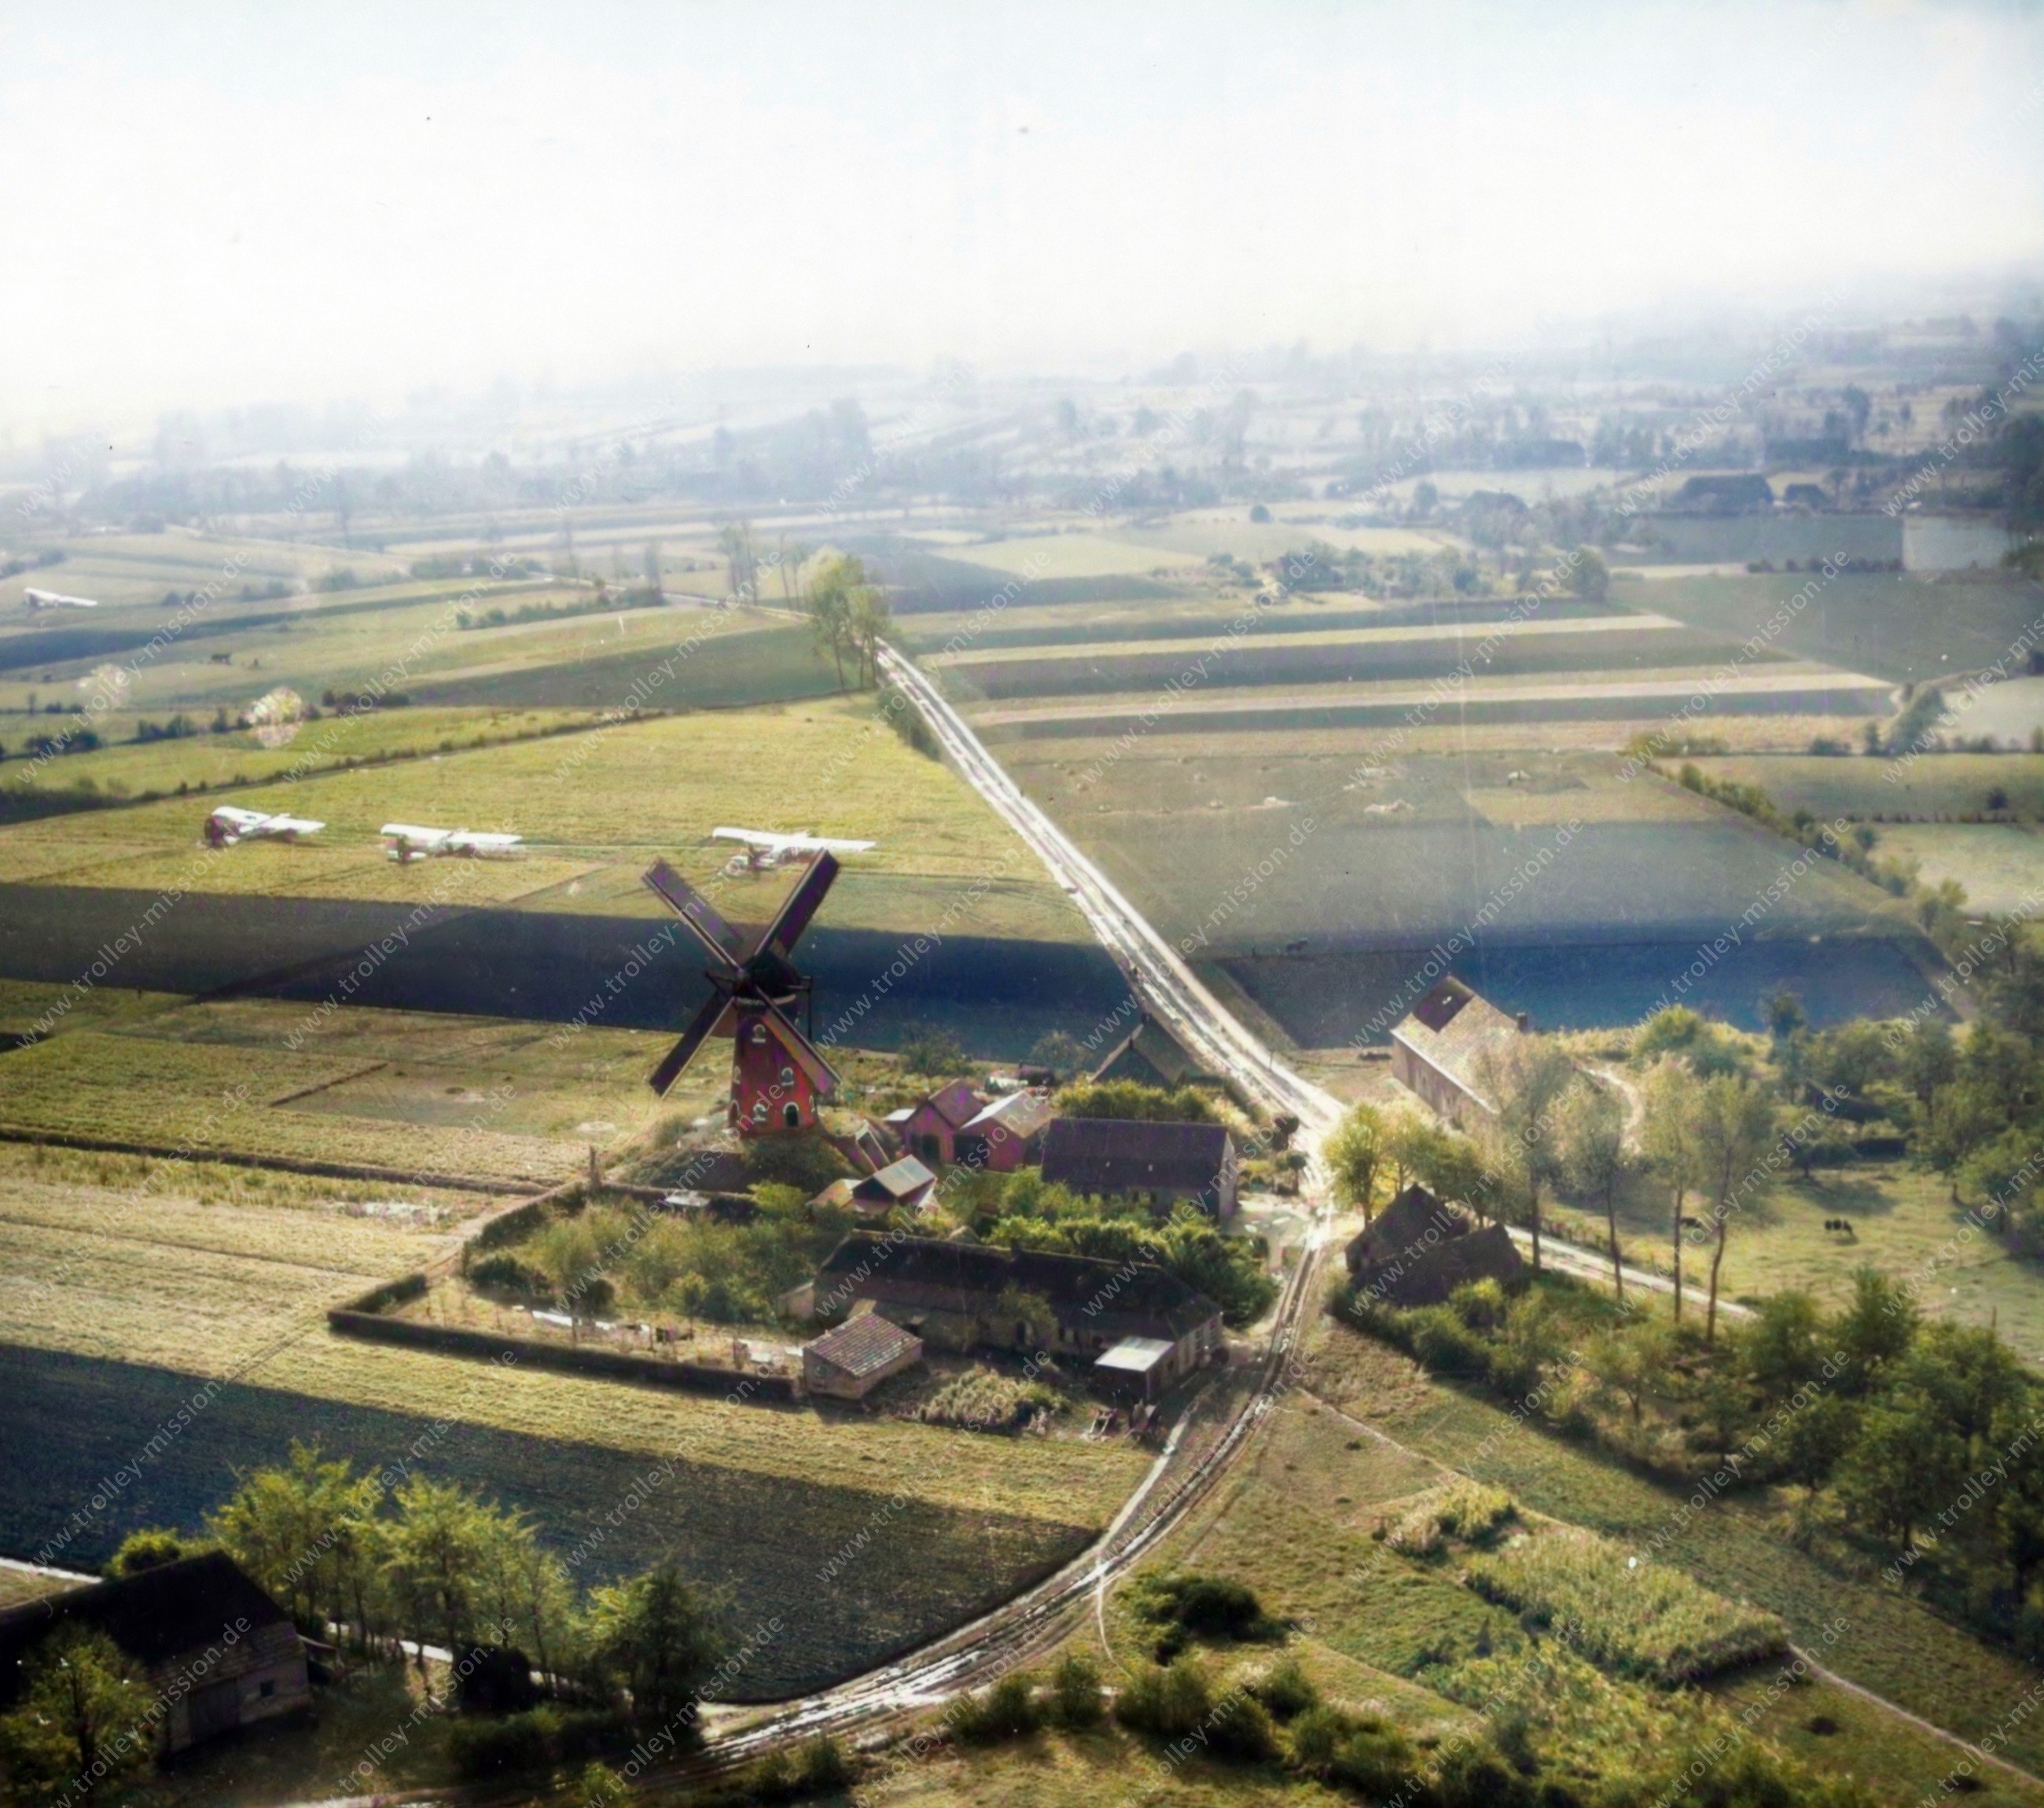 Windmühle im Patrijsweg 1 im Dorf Uden in der Gemeinde Maashorst in der Provinz Noord-Brabant (Niederlande)